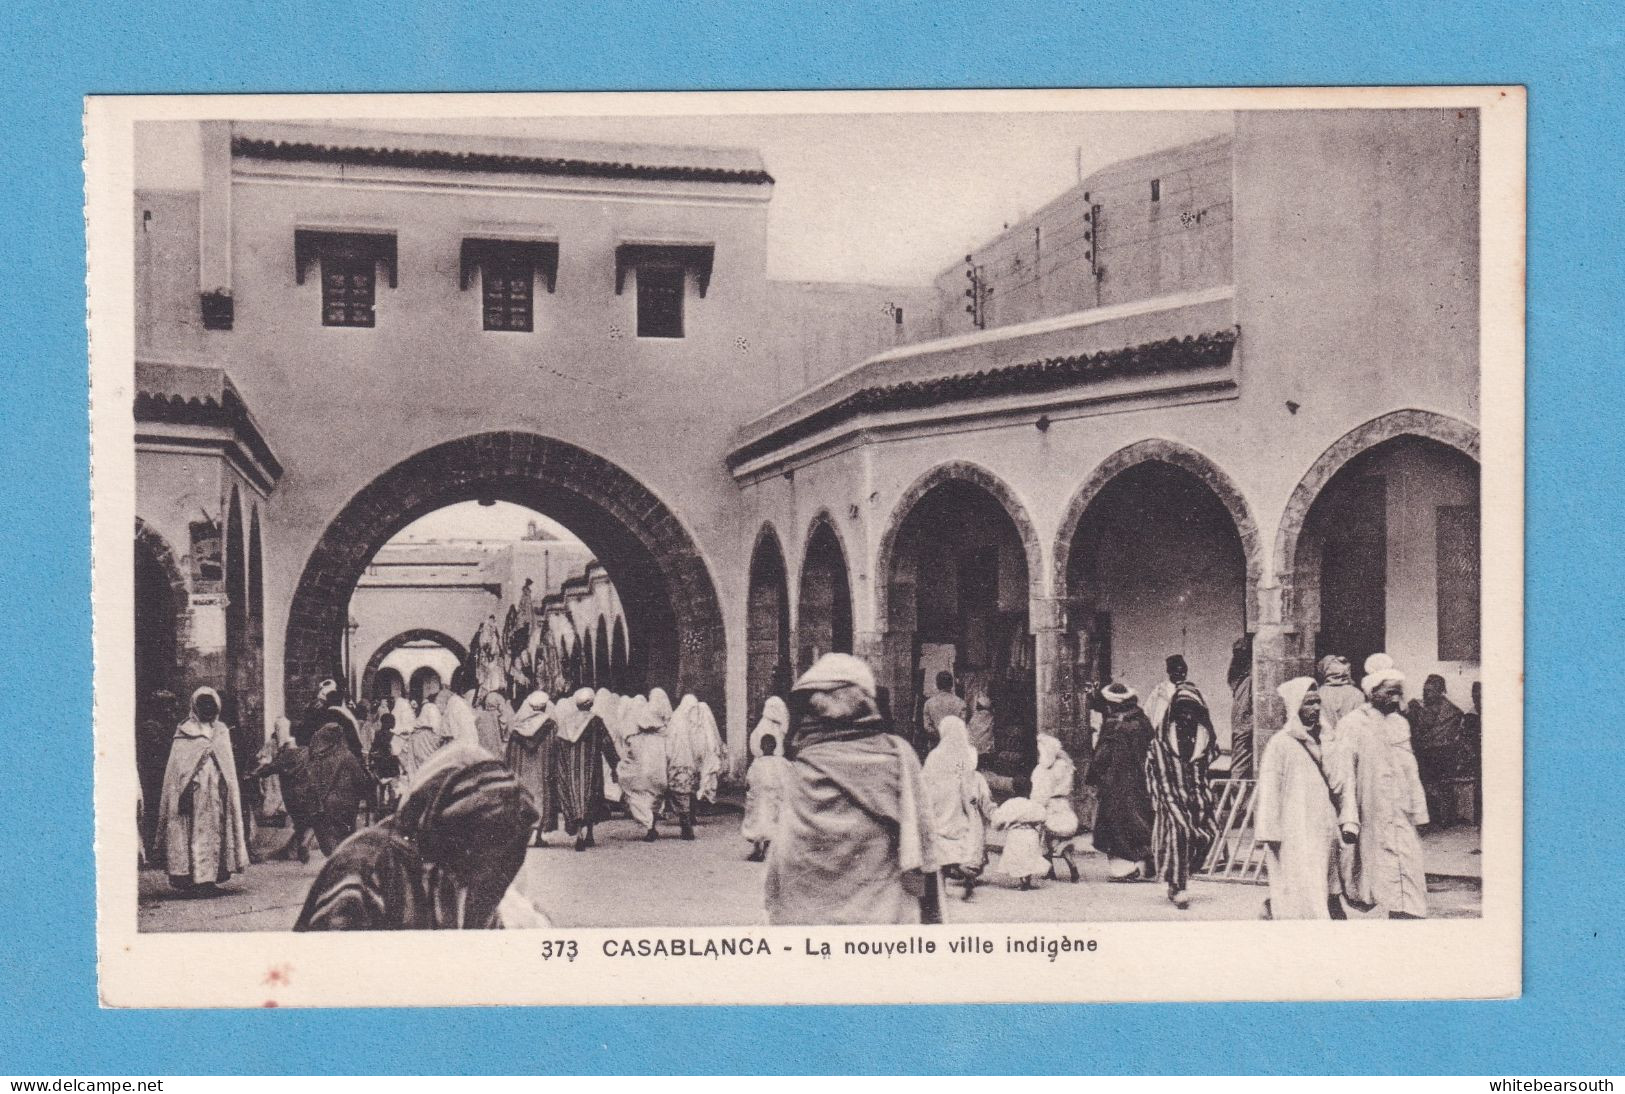 696 MOROCCO MARRUECOS CASABLANCA LA NOUVELLE VILLE INDIGENE RARE POSTCARD - Casablanca